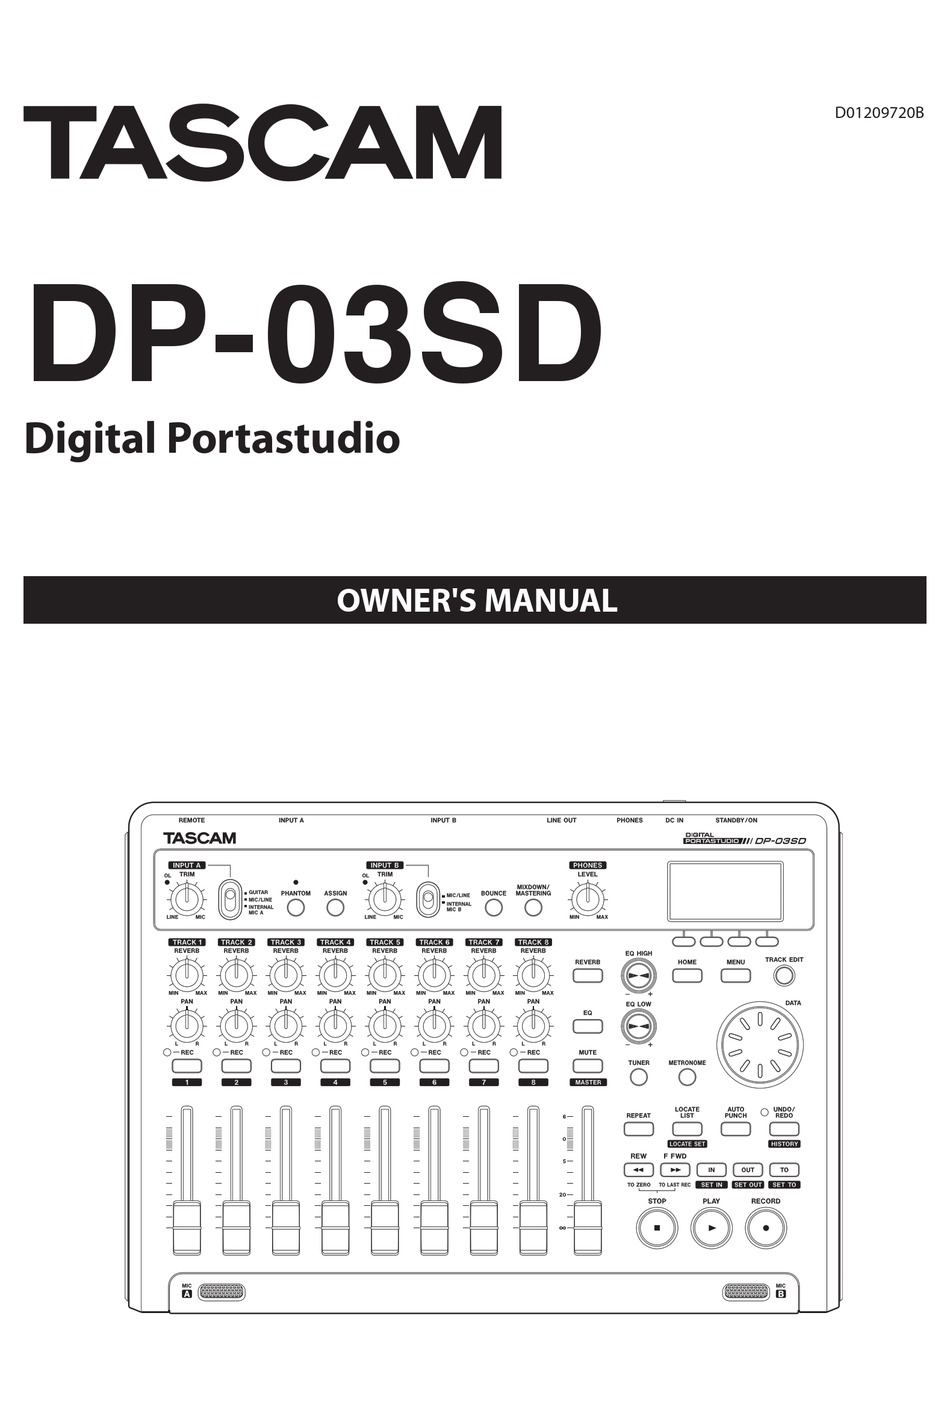 TASCAM DIGITAL PORTASTUDIO DP-03SD OWNER'S MANUAL Pdf Download | ManualsLib